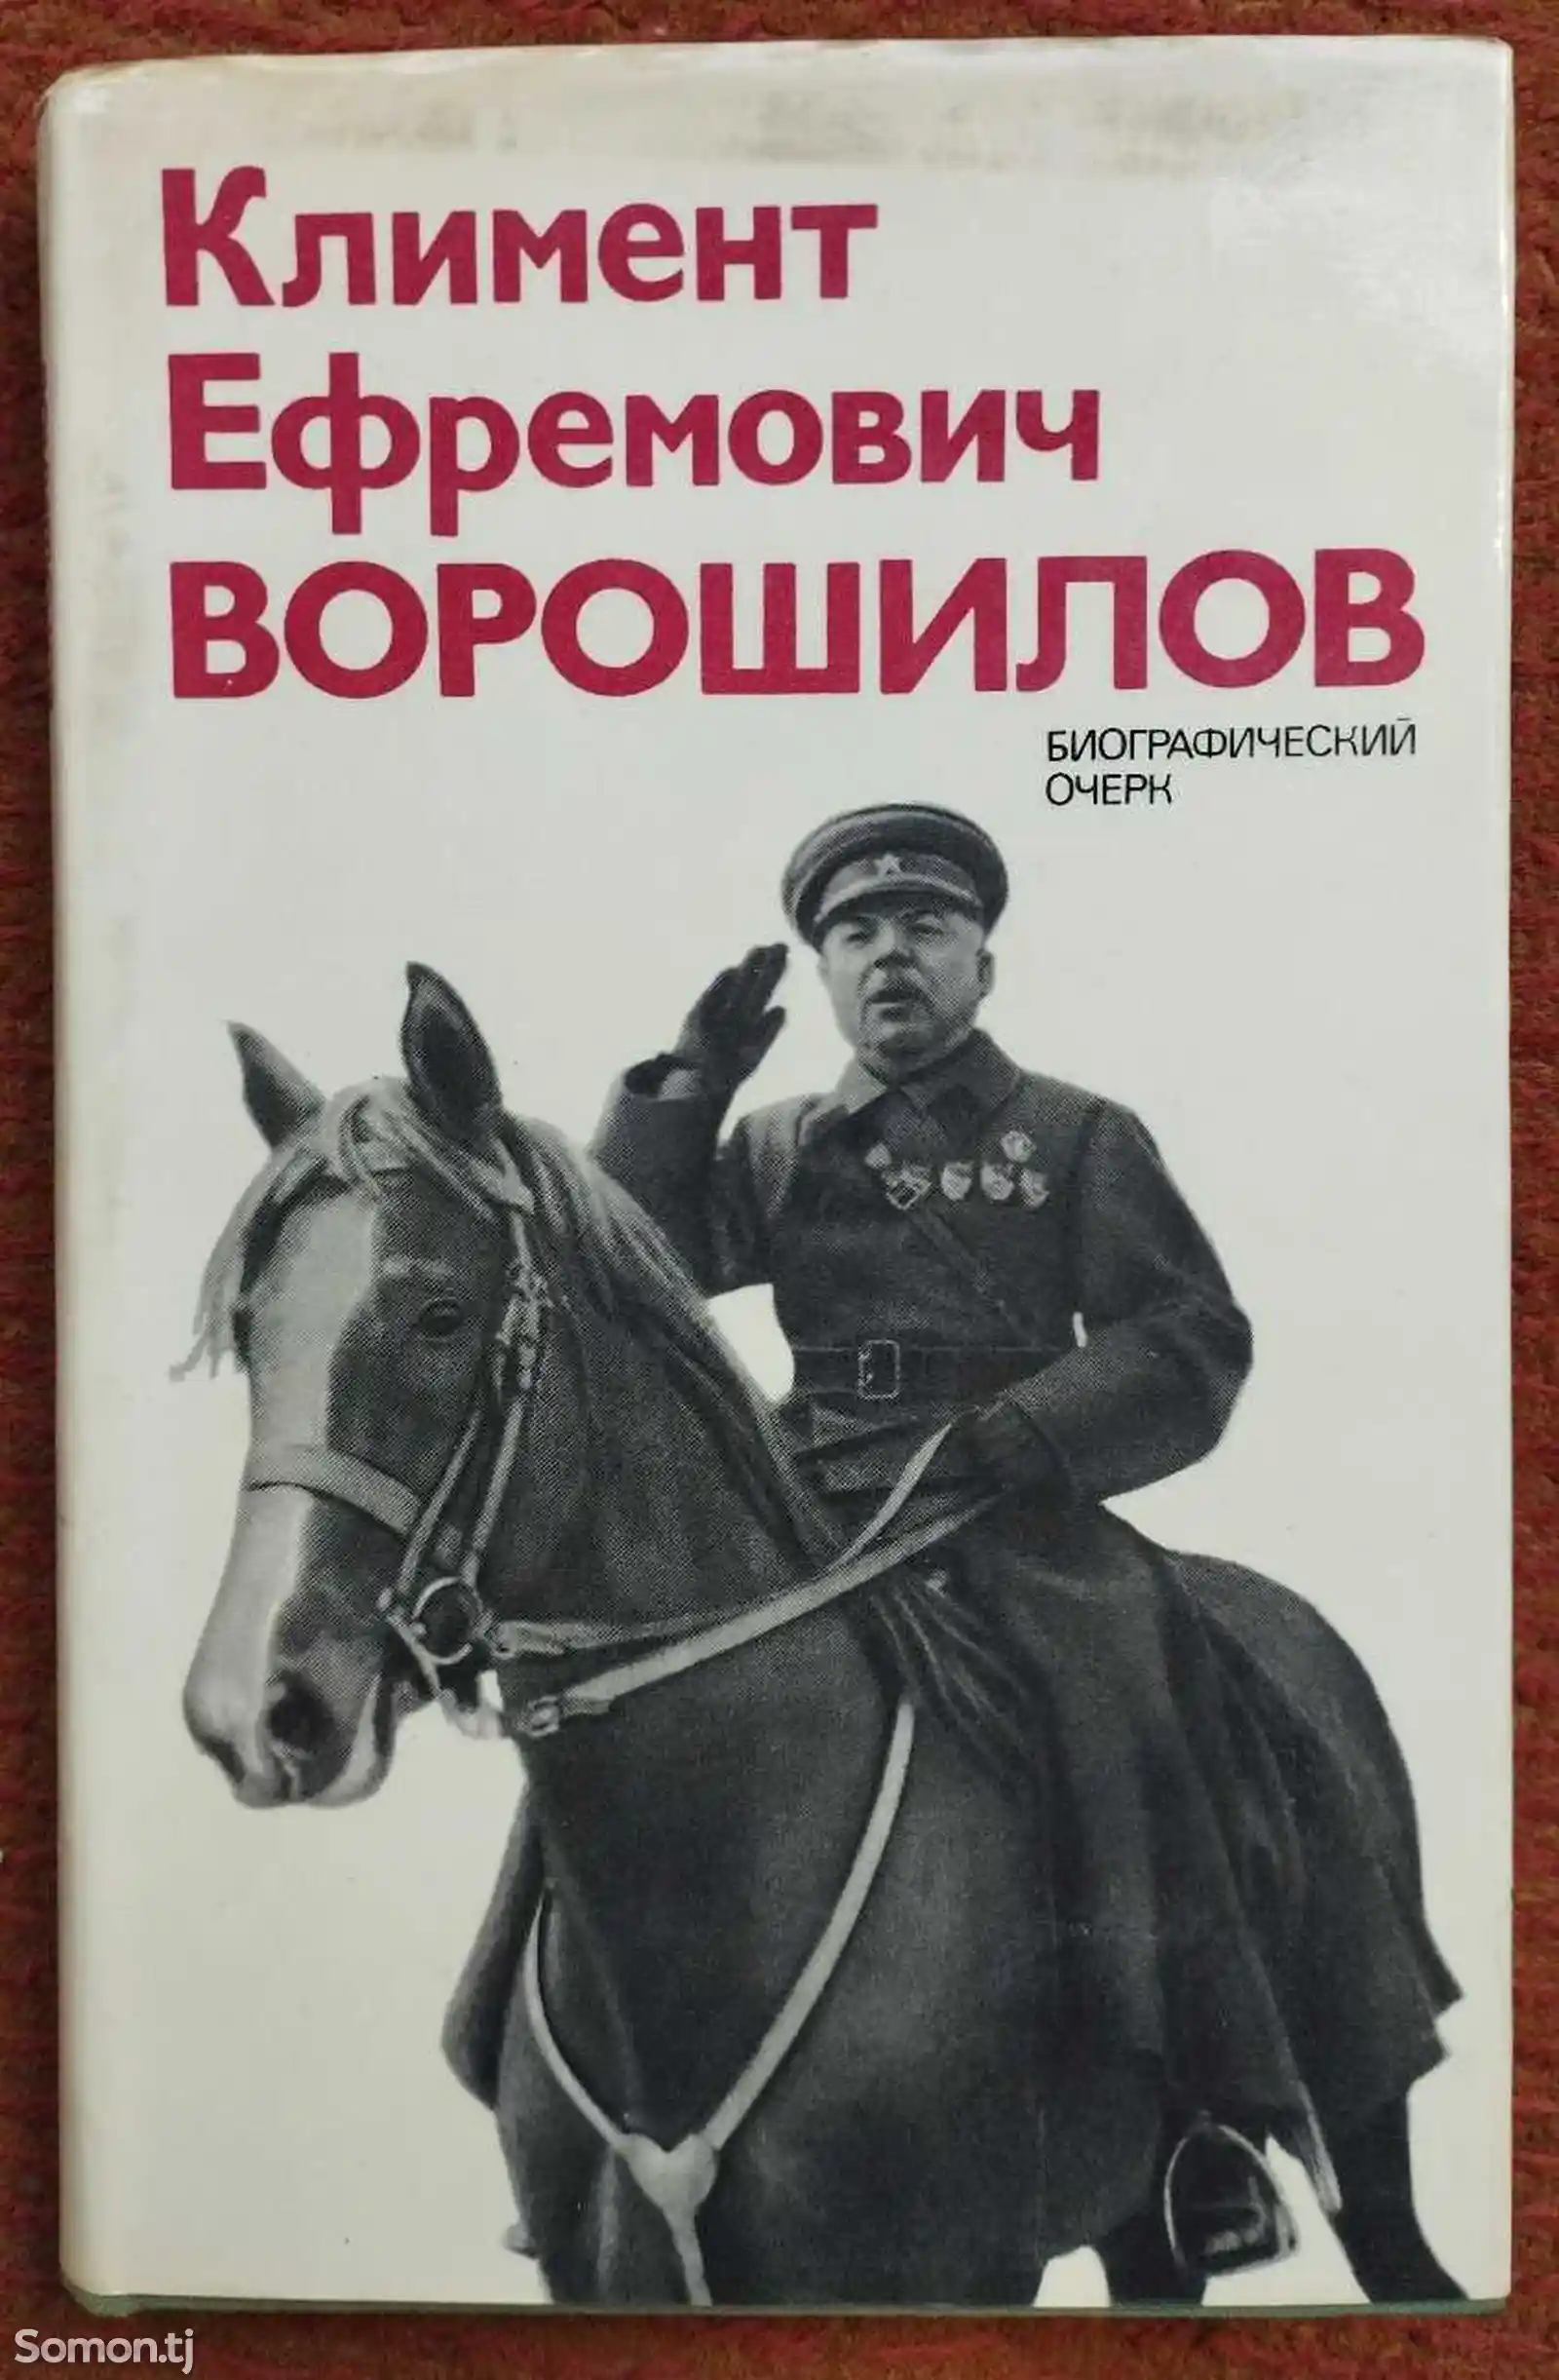 Книга Климент Ефремович Ворошилов-1